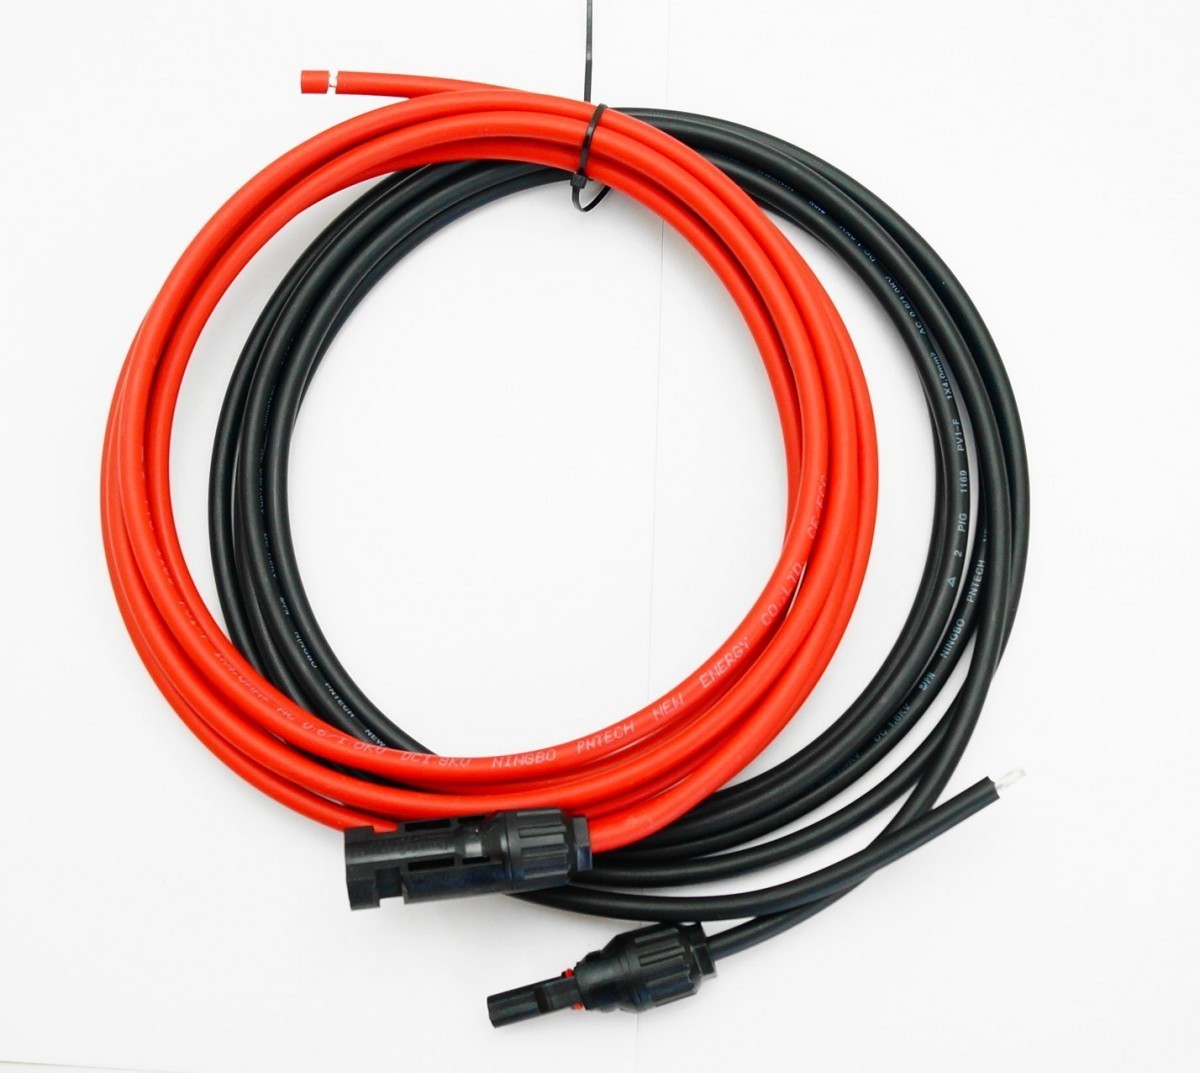 ソーラーケーブル延長ケーブル MC4 コネクタ付き 1m 2.5sq 赤と黒2本セット/ケーブル径5.3mm_画像2